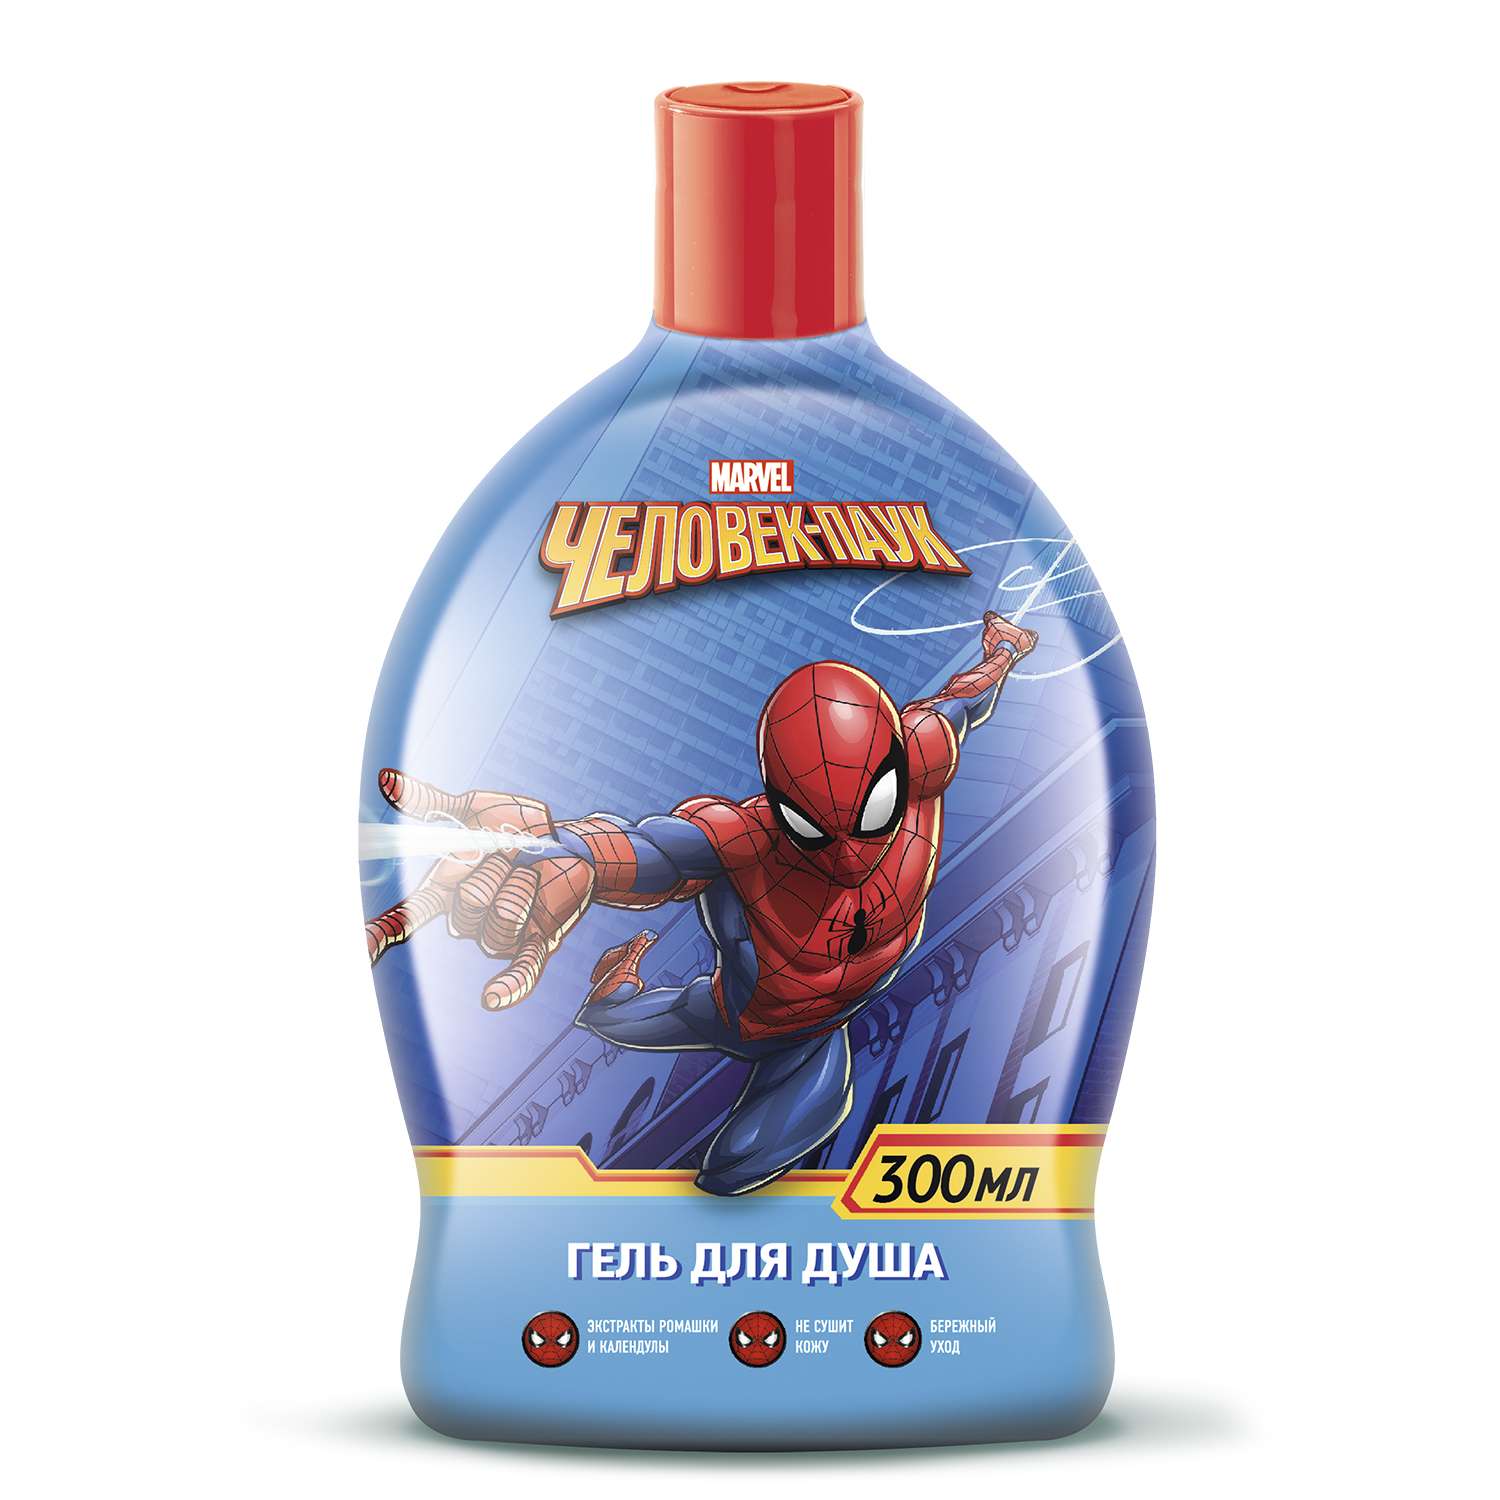 Набор подарочный Человек-Паук (Spider-man) шампунь 300мл+гель для душа 300мл 34931 - фото 3